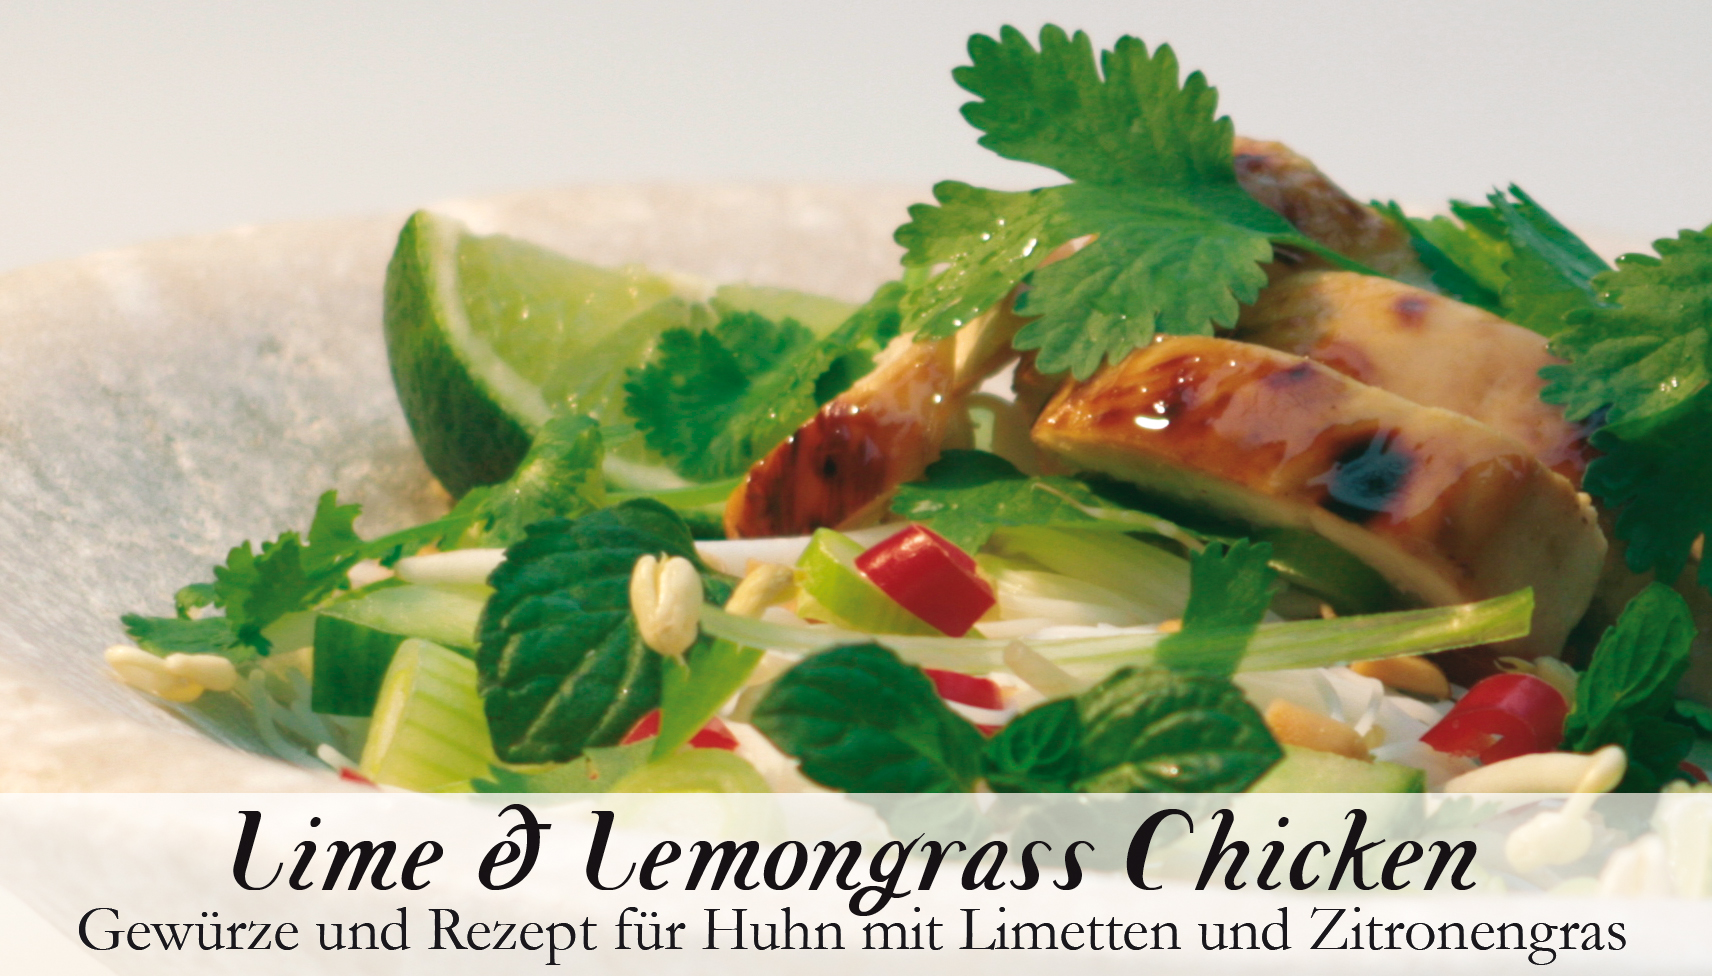 Lime & Lemongrass Chicken-Gewürzkasten